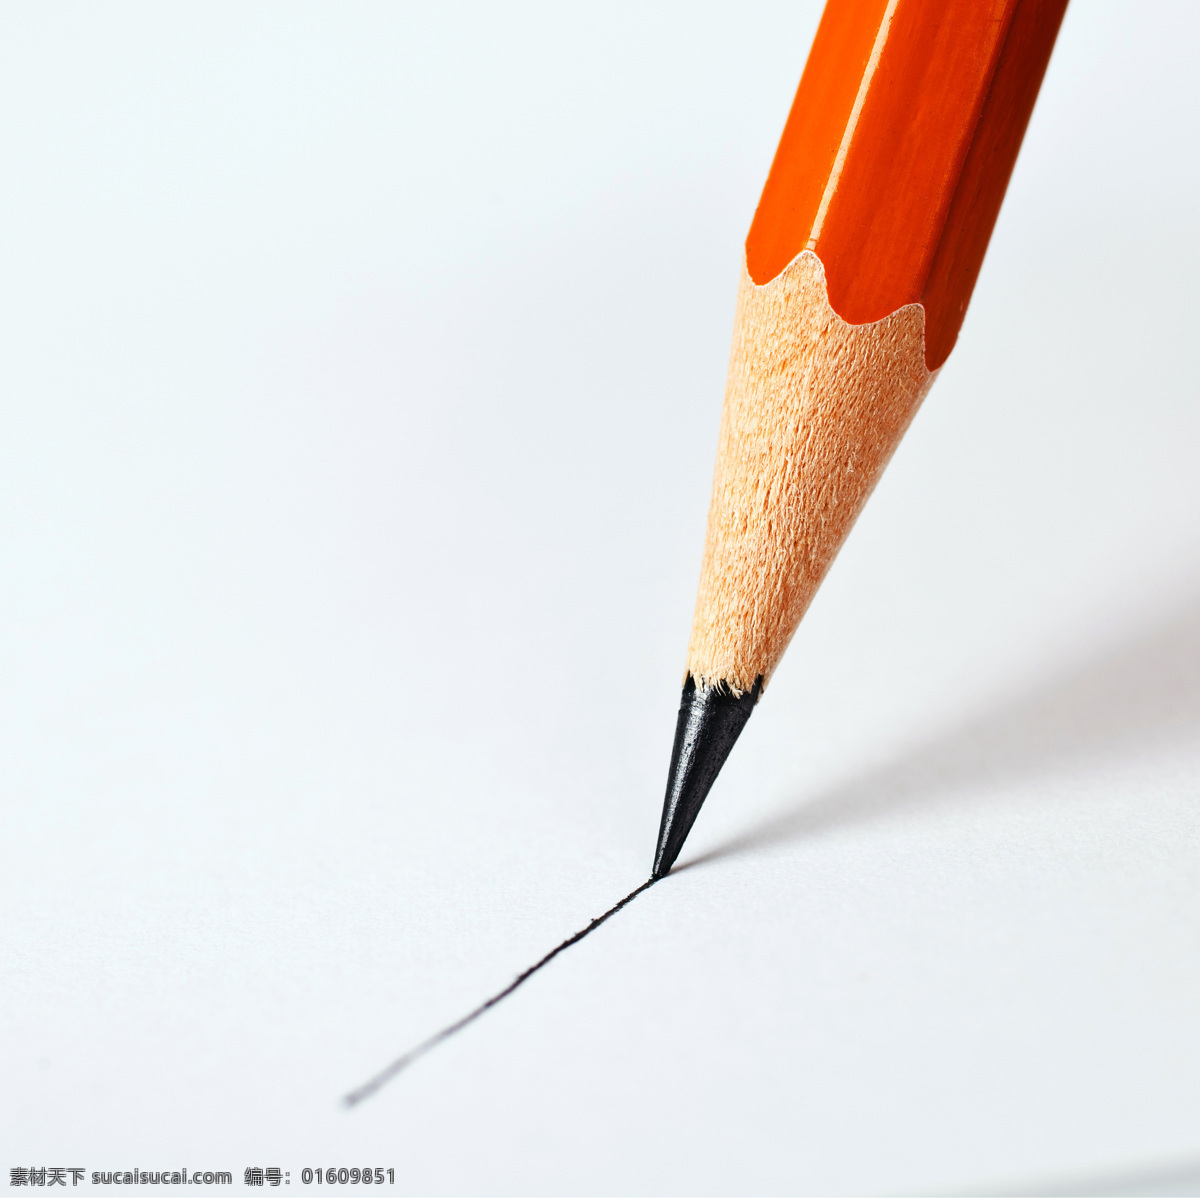 红色铅笔 铅笔 笔 绘画笔 彩色铅笔 书写工具 绘画工具 学习用品 其他类别 生活百科 白色